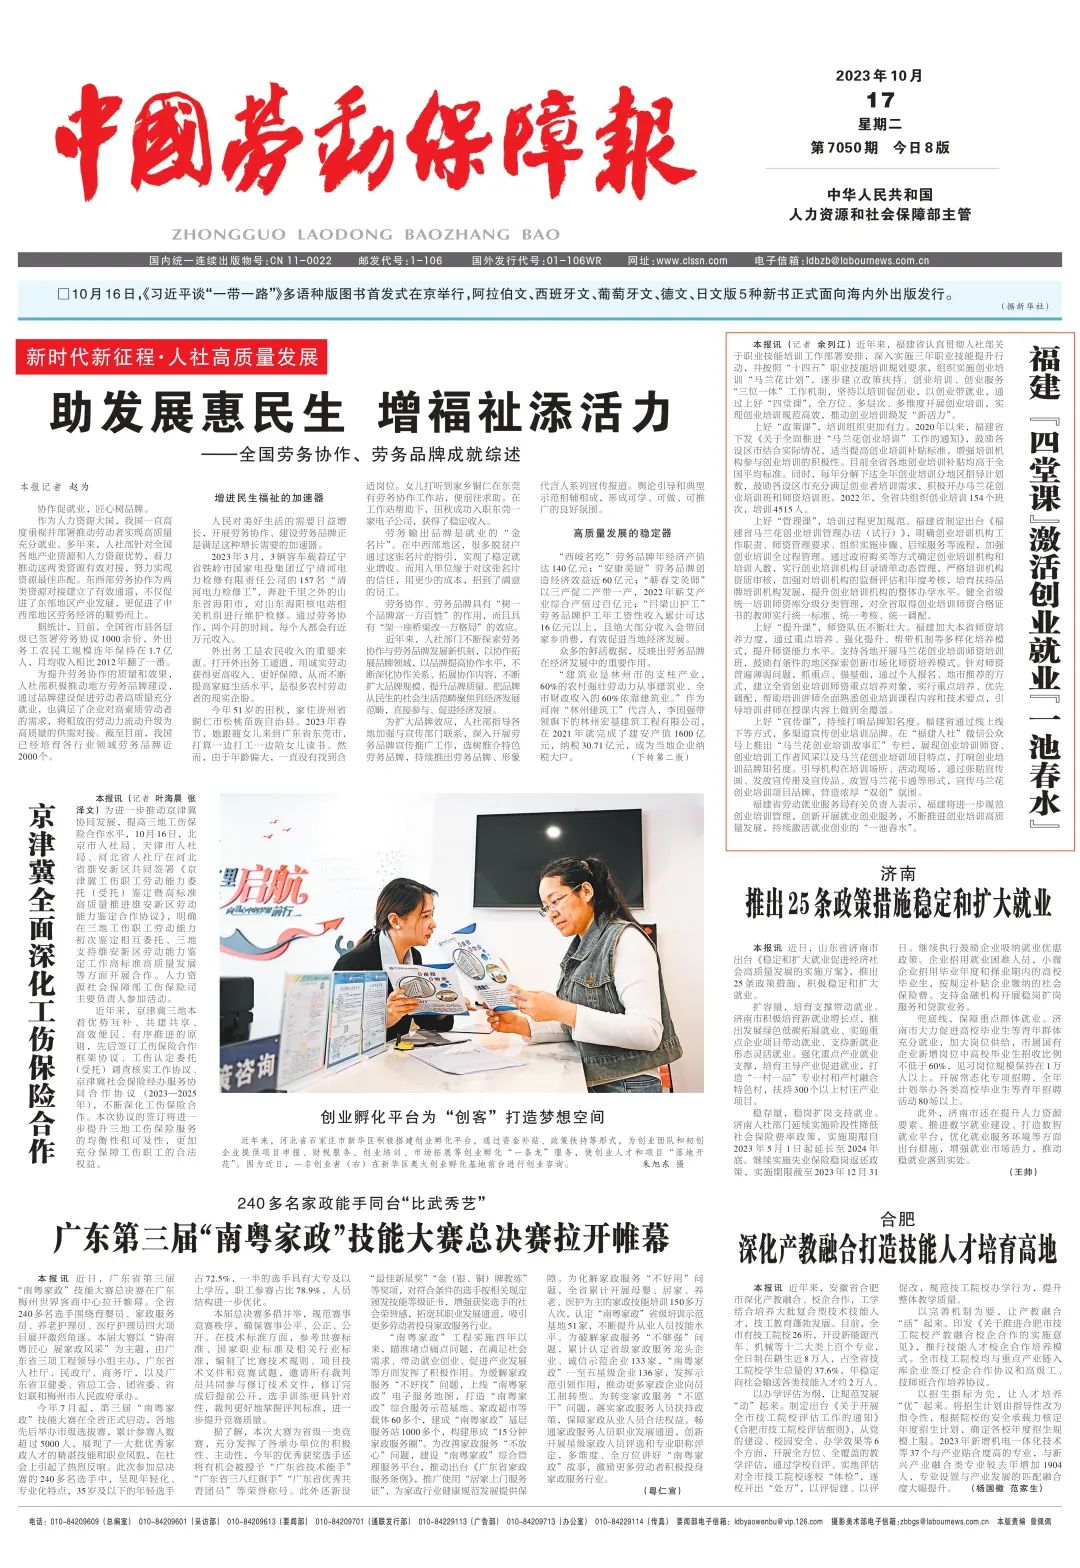 《中国劳动保障报》头版报道：福建“四堂课”激活创业就业“一池春水”